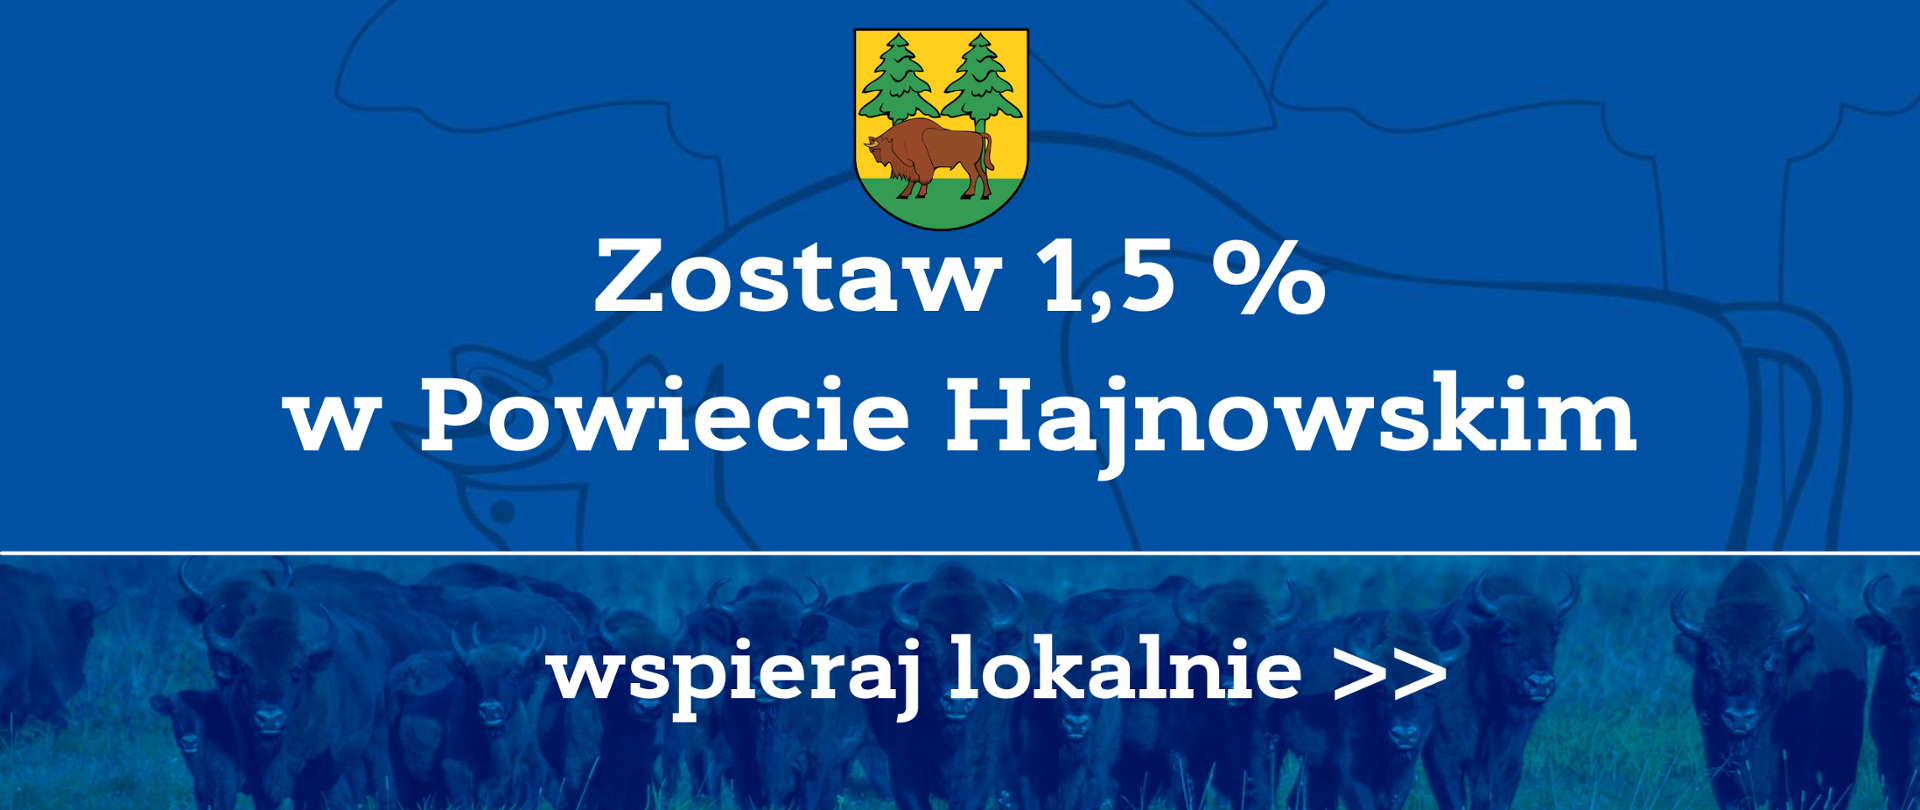 Zostaw 1,5% w Powiecie Hajnowskim. Wspieraj lokalnie!